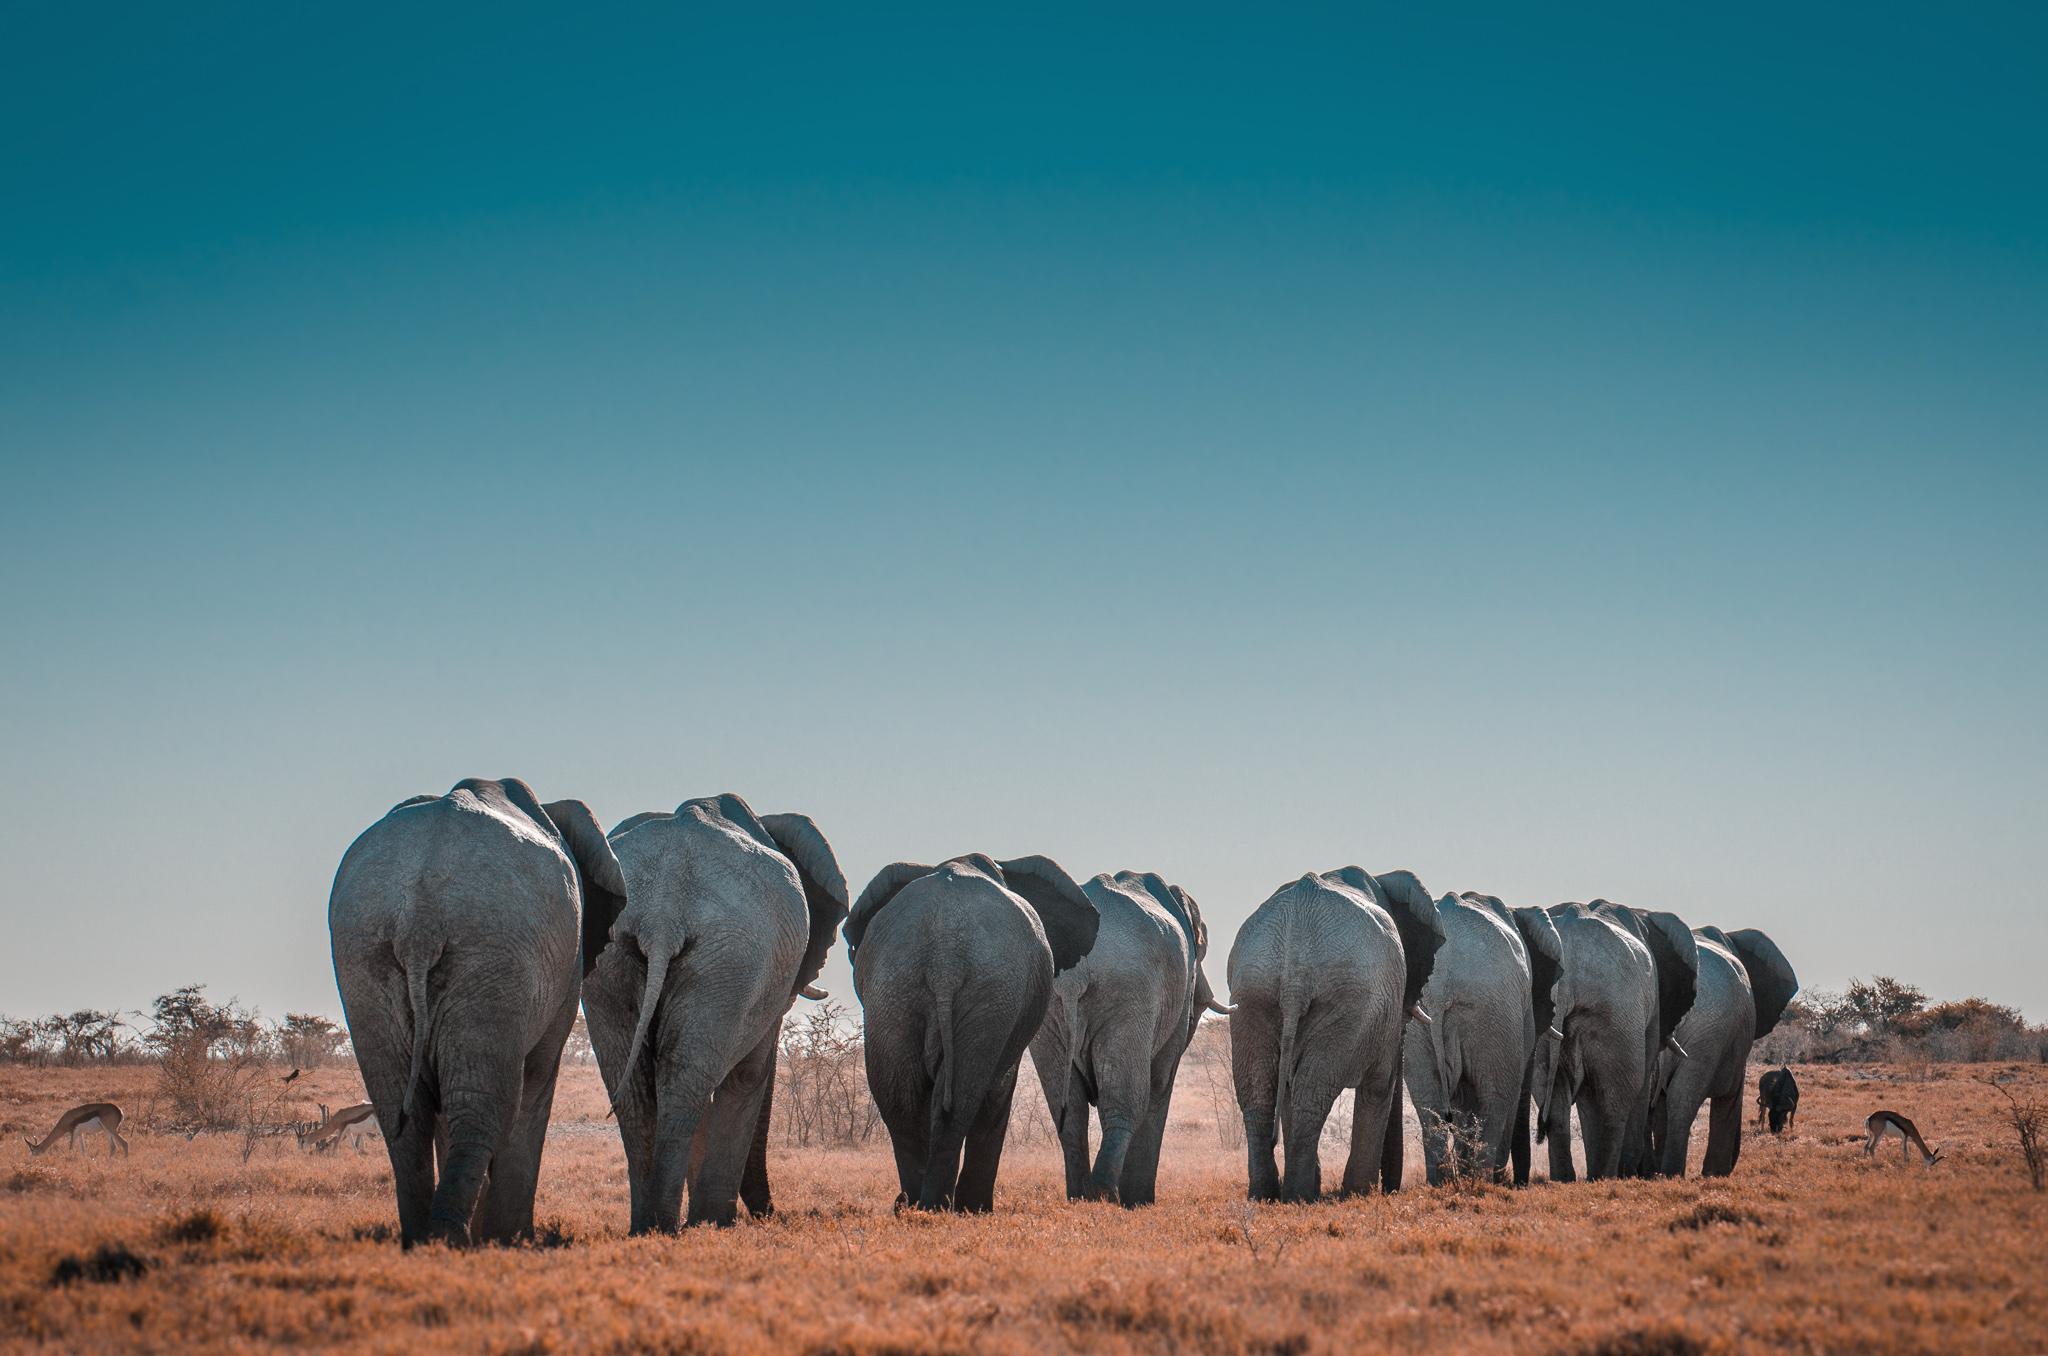 elephants in a line walking into a grassy plain